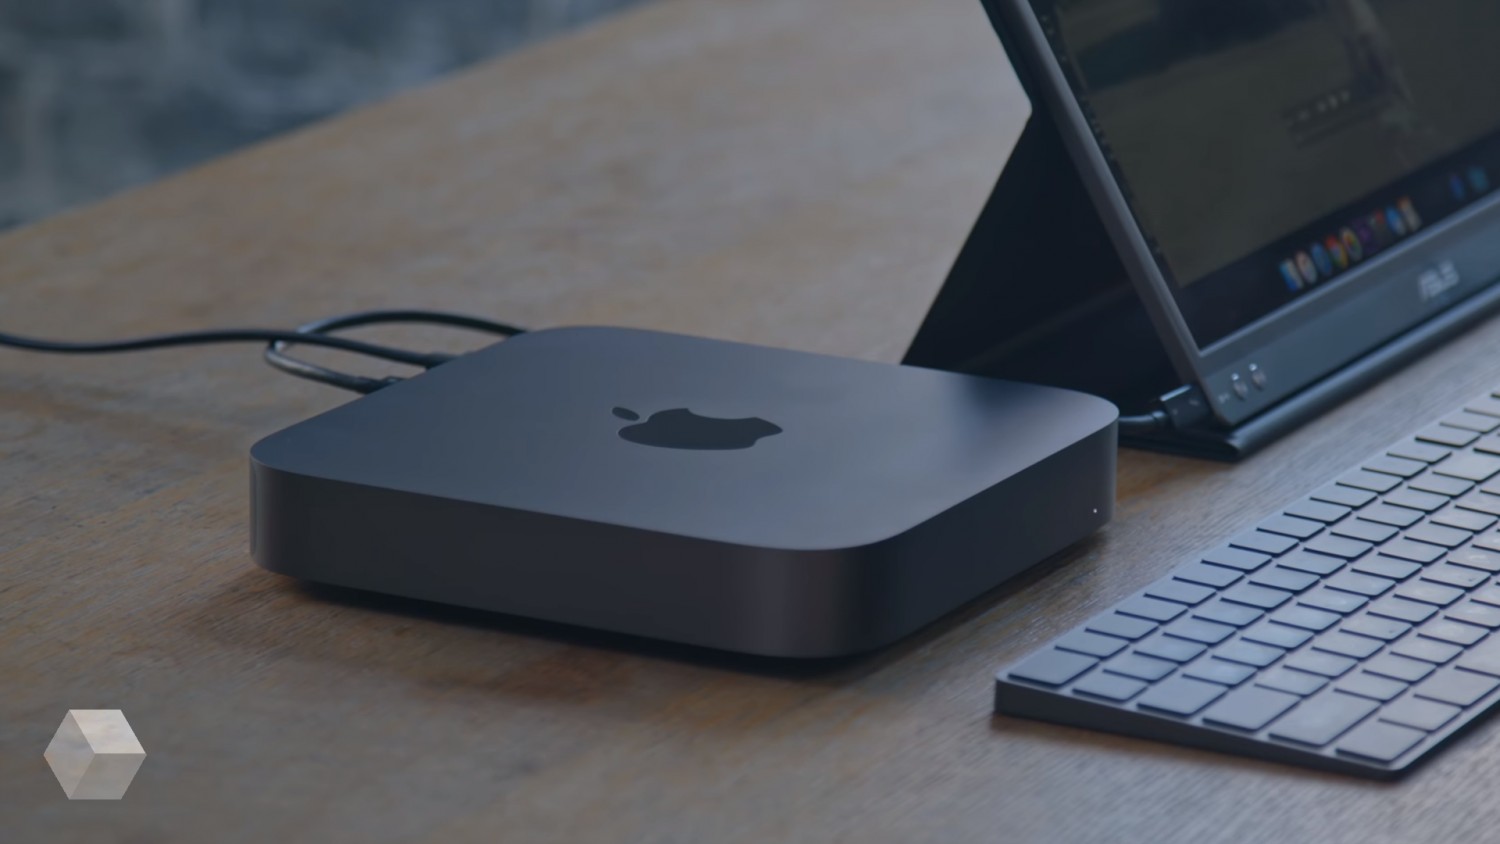 Пользователи жалуются на проблемы с Bluetooth в новом Mac mini c Apple M1